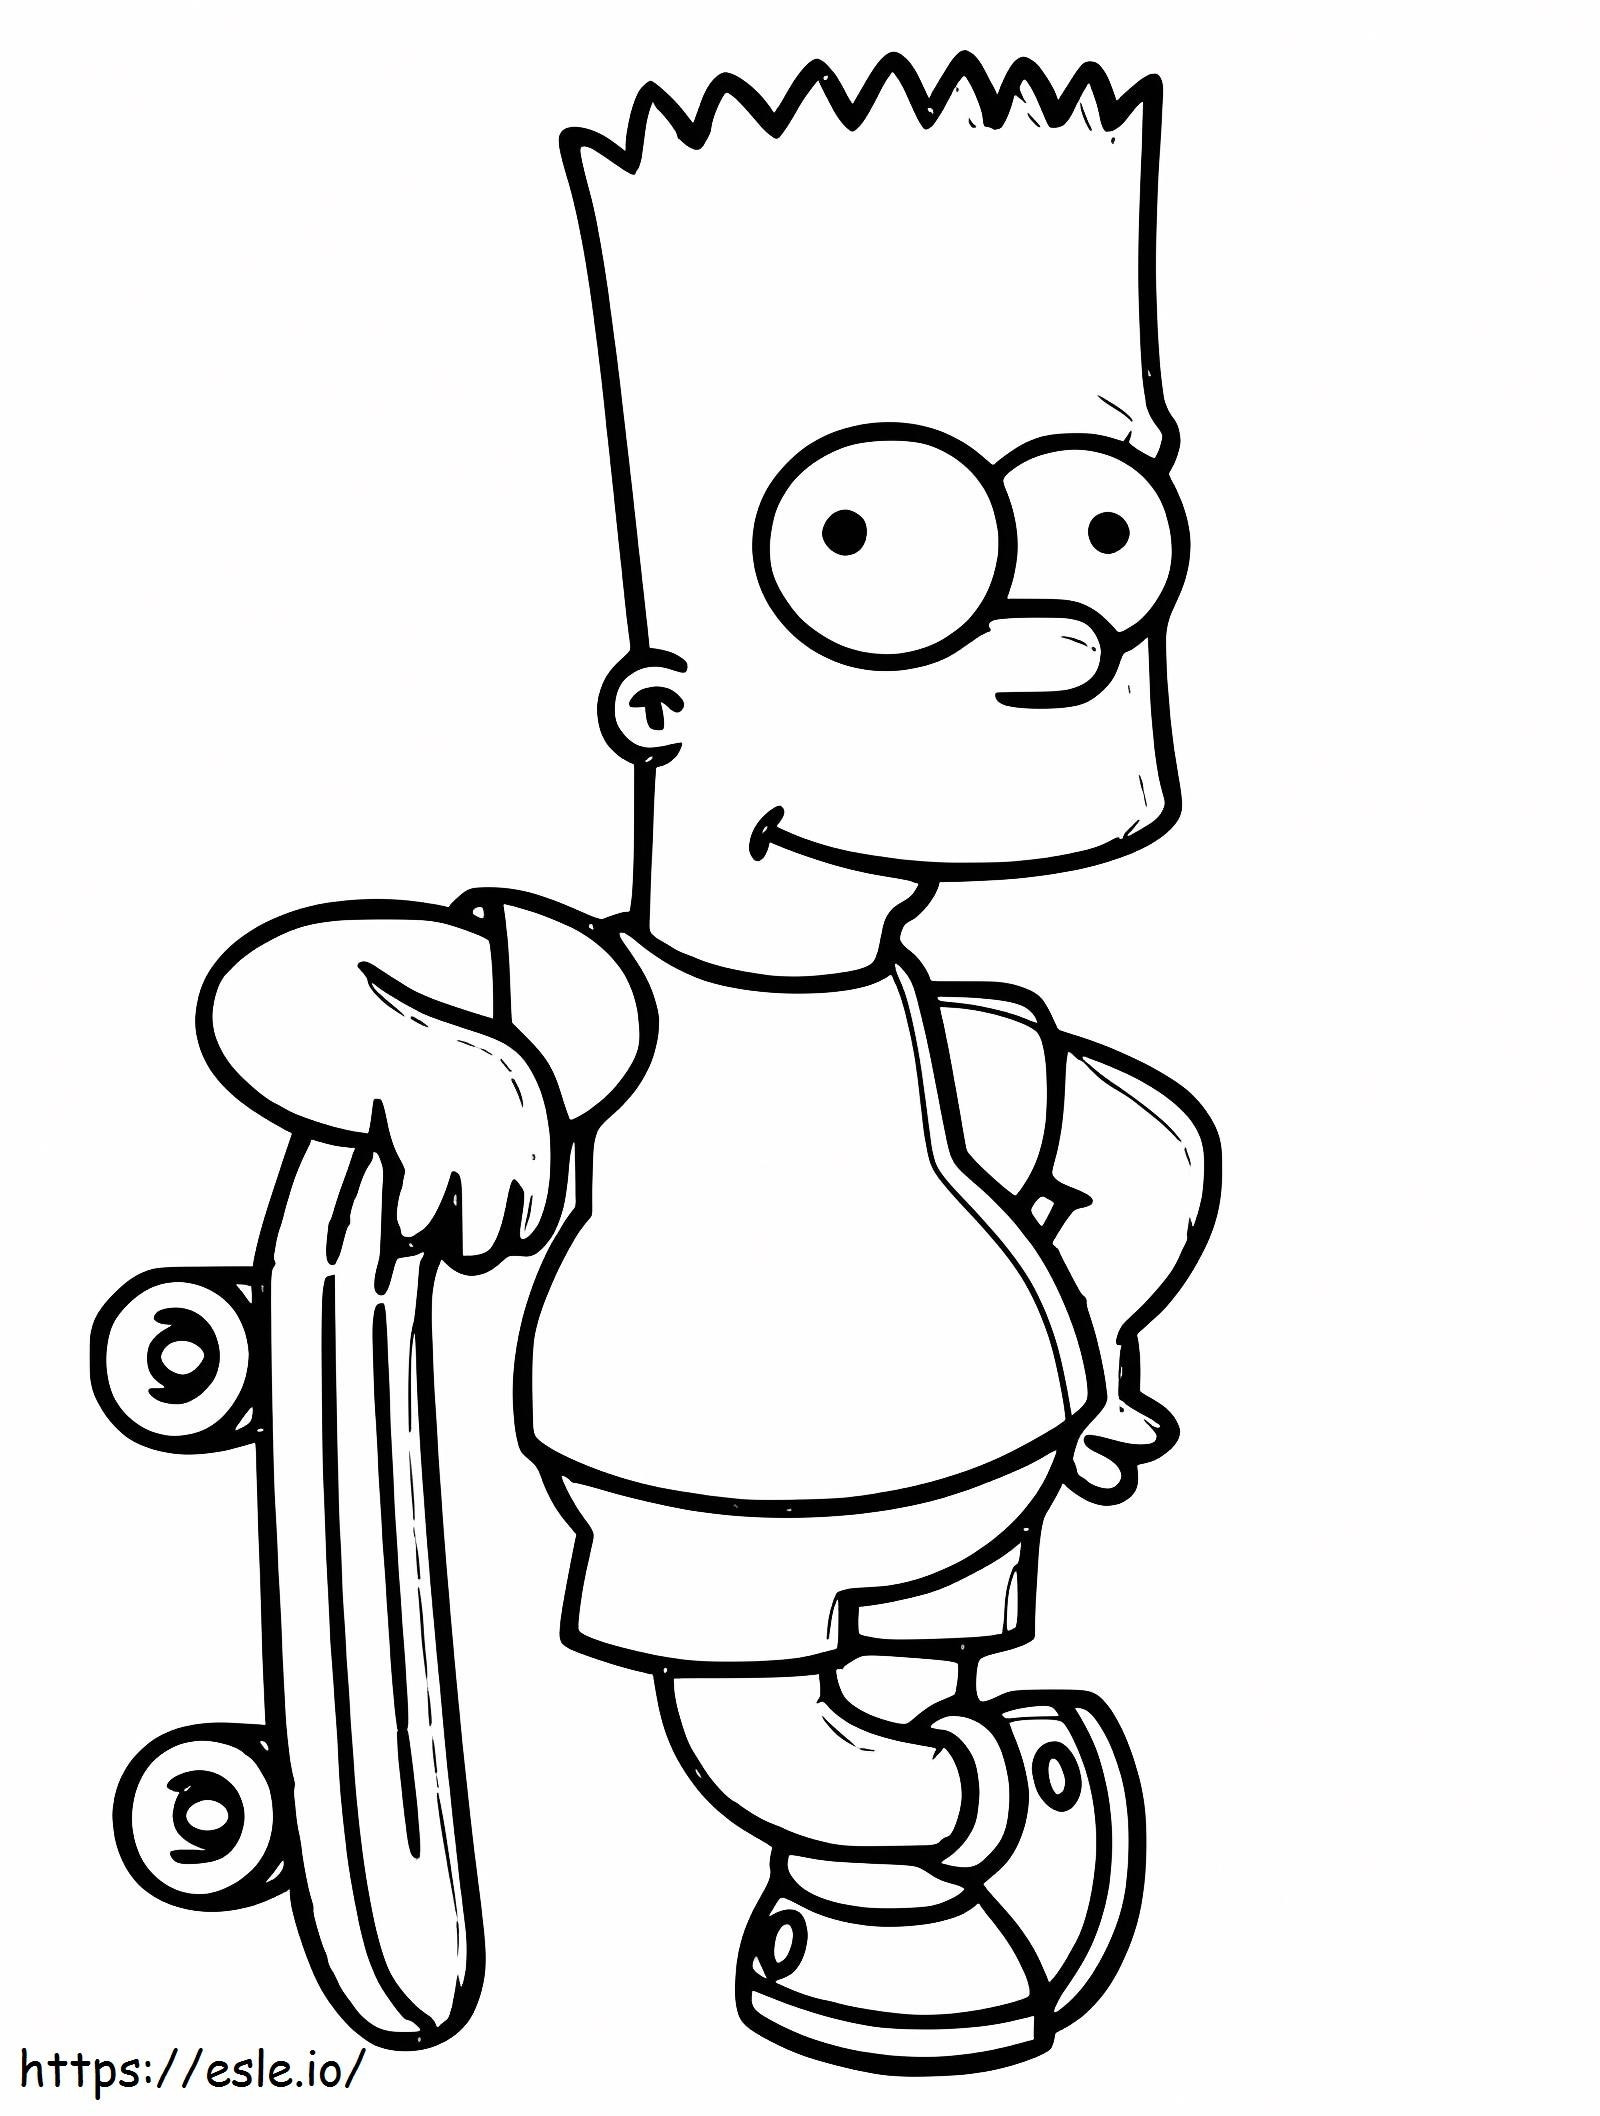 Coloriage  Bart Simpson avec planche à roulettes A4 à imprimer dessin